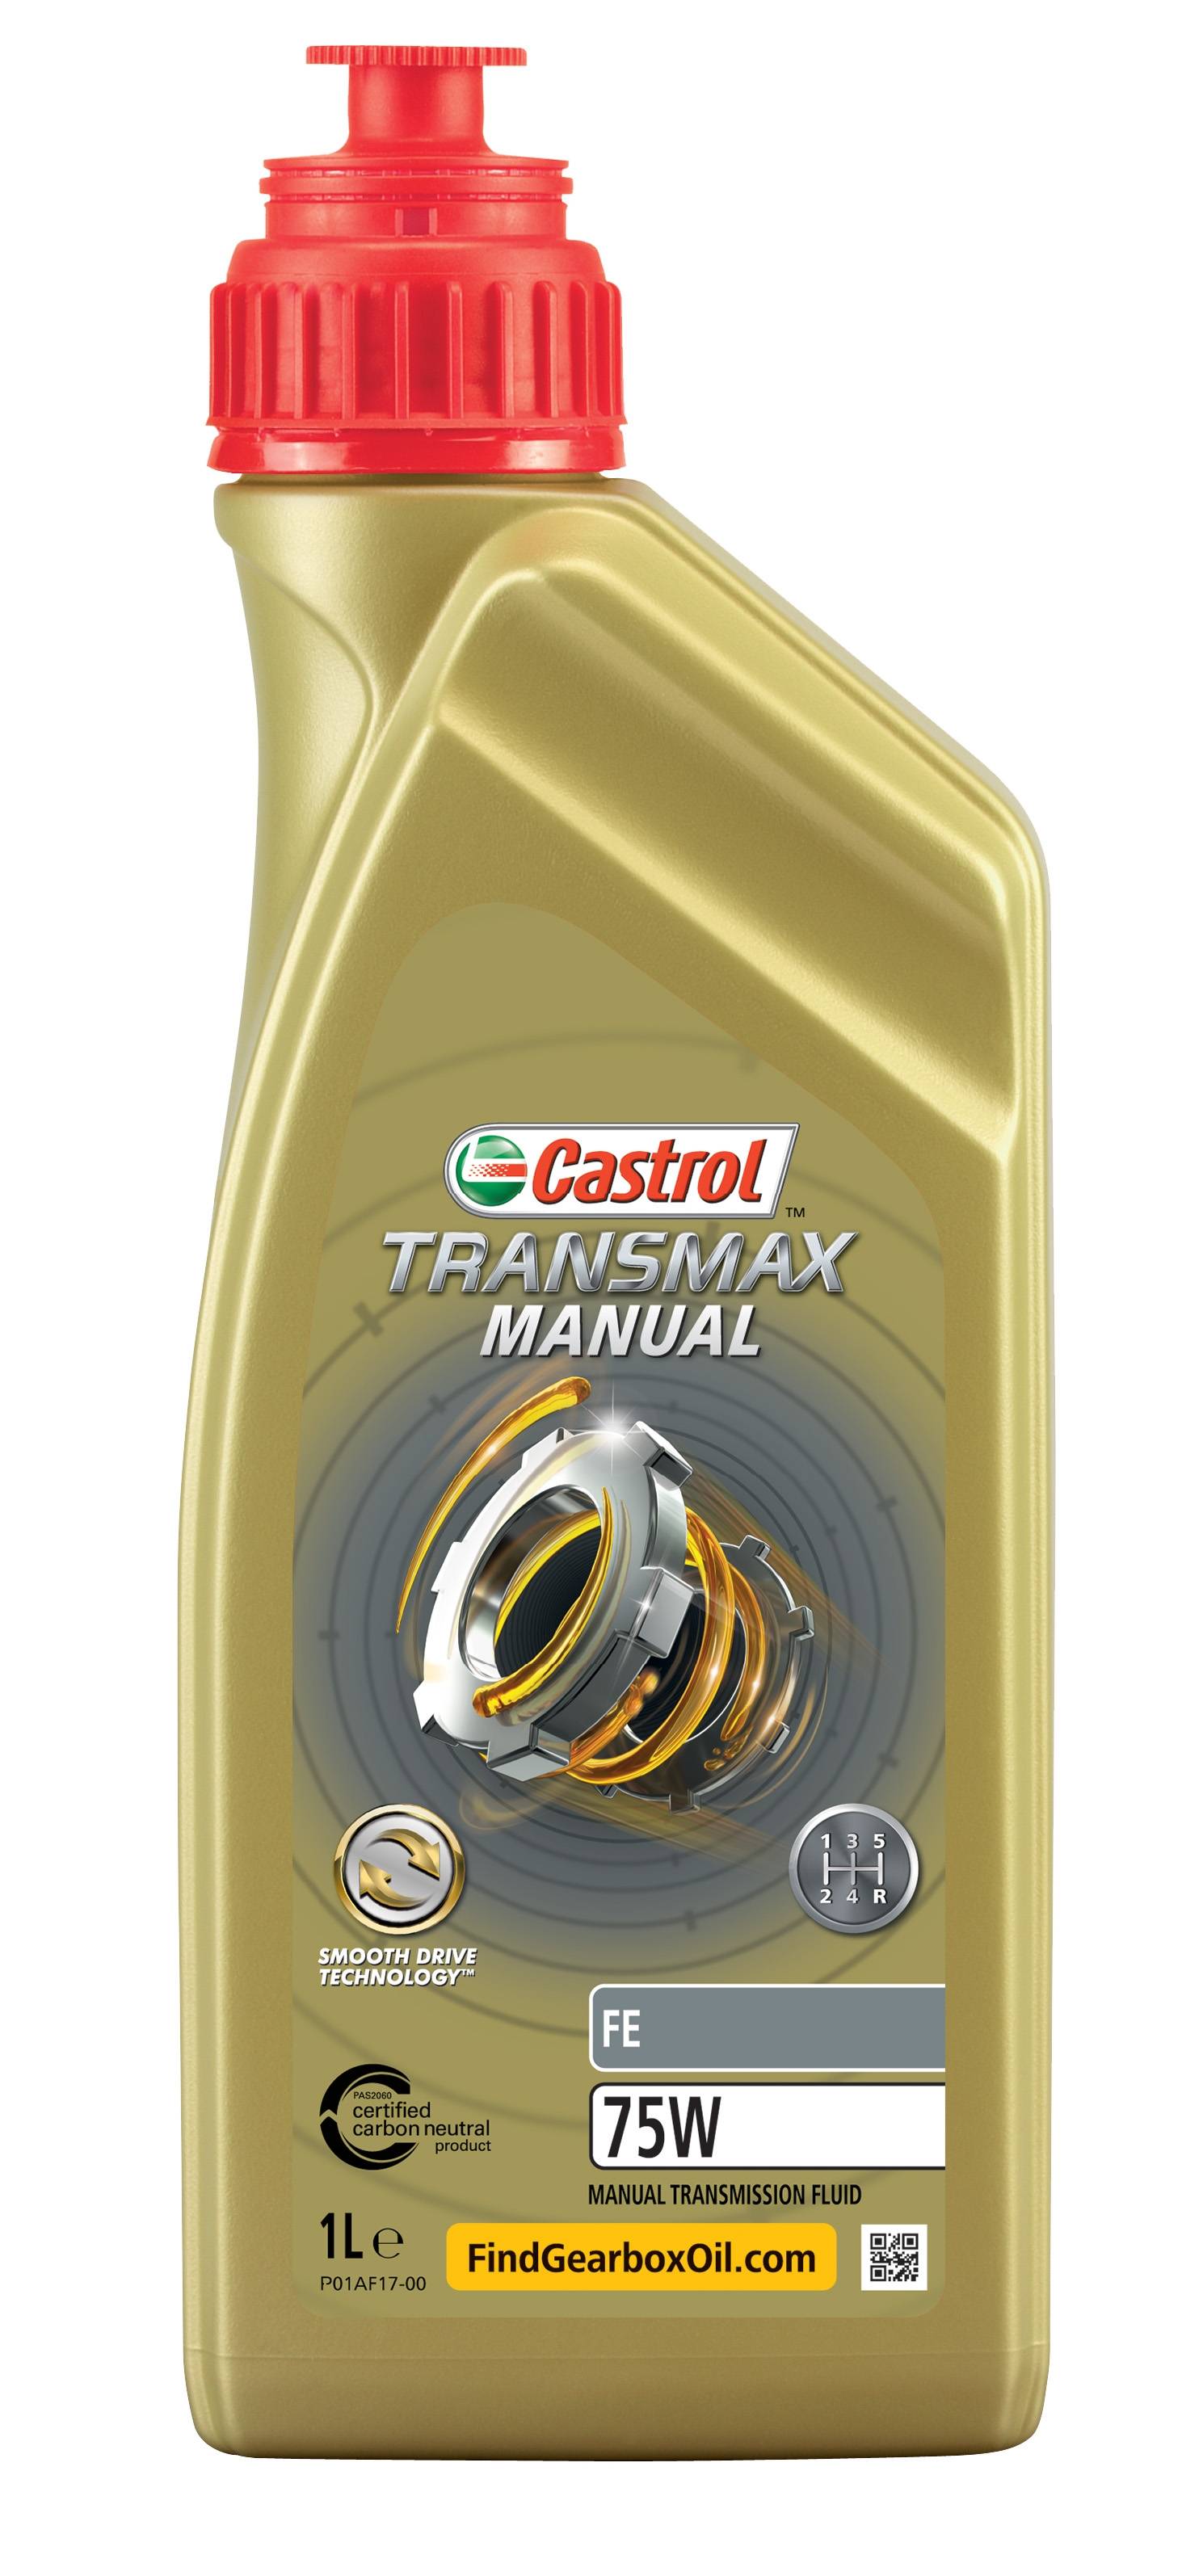 Масло трансмиссионное Transmax Manual FE 75W 1L - Castrol 15D7EA